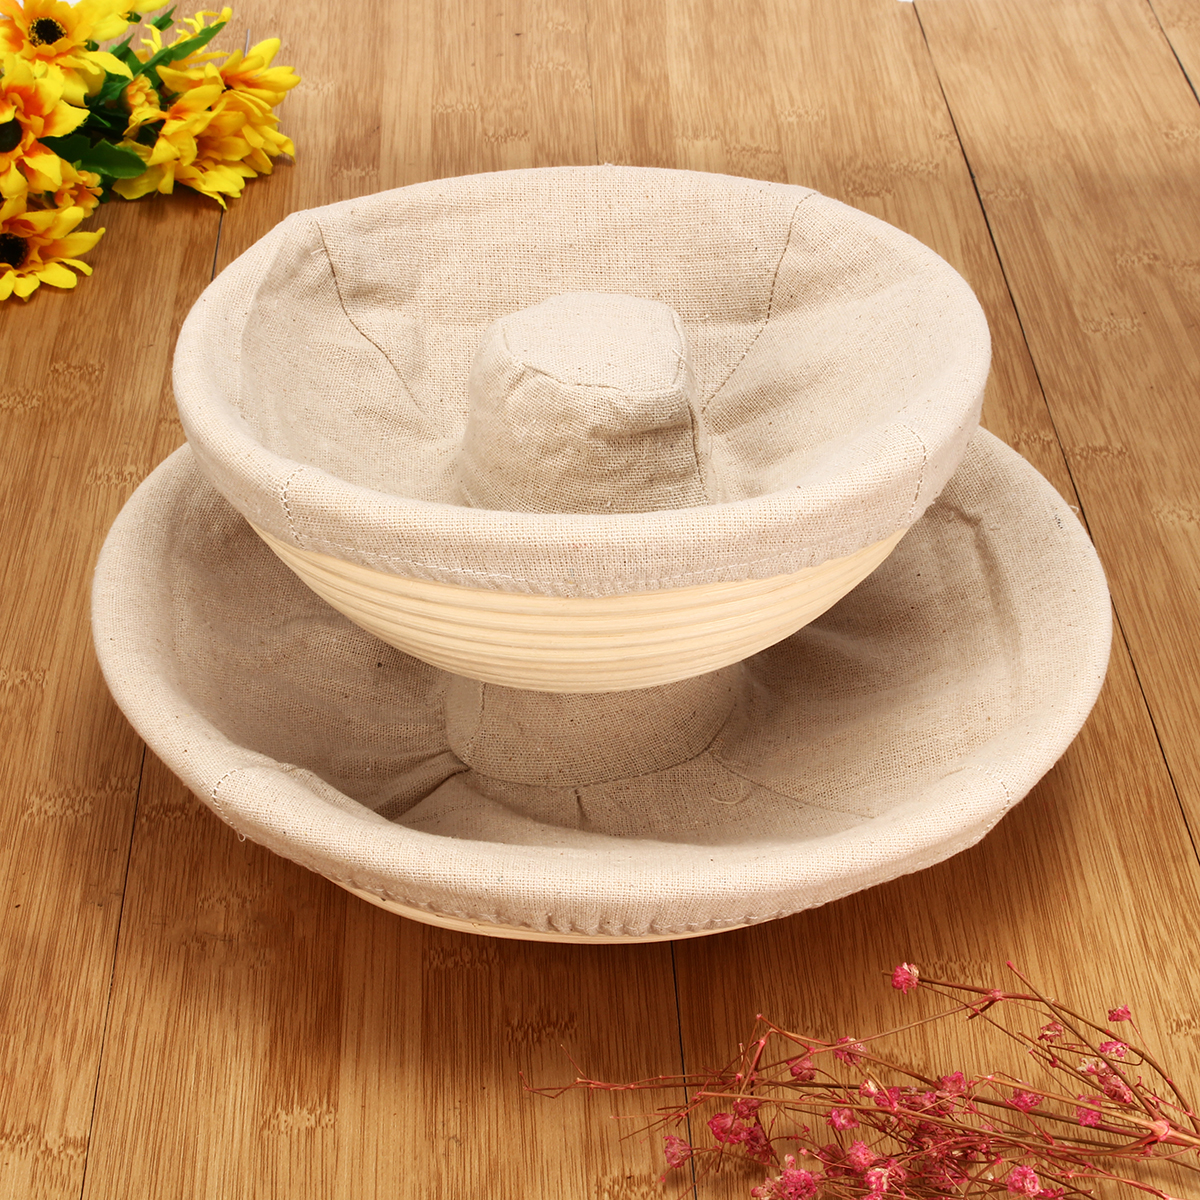 Handmade-Round-Oval-Banneton-Bortform-Rattan-Storage-Baskets-Bread-Dough-Proofing-Liner-1383037-5